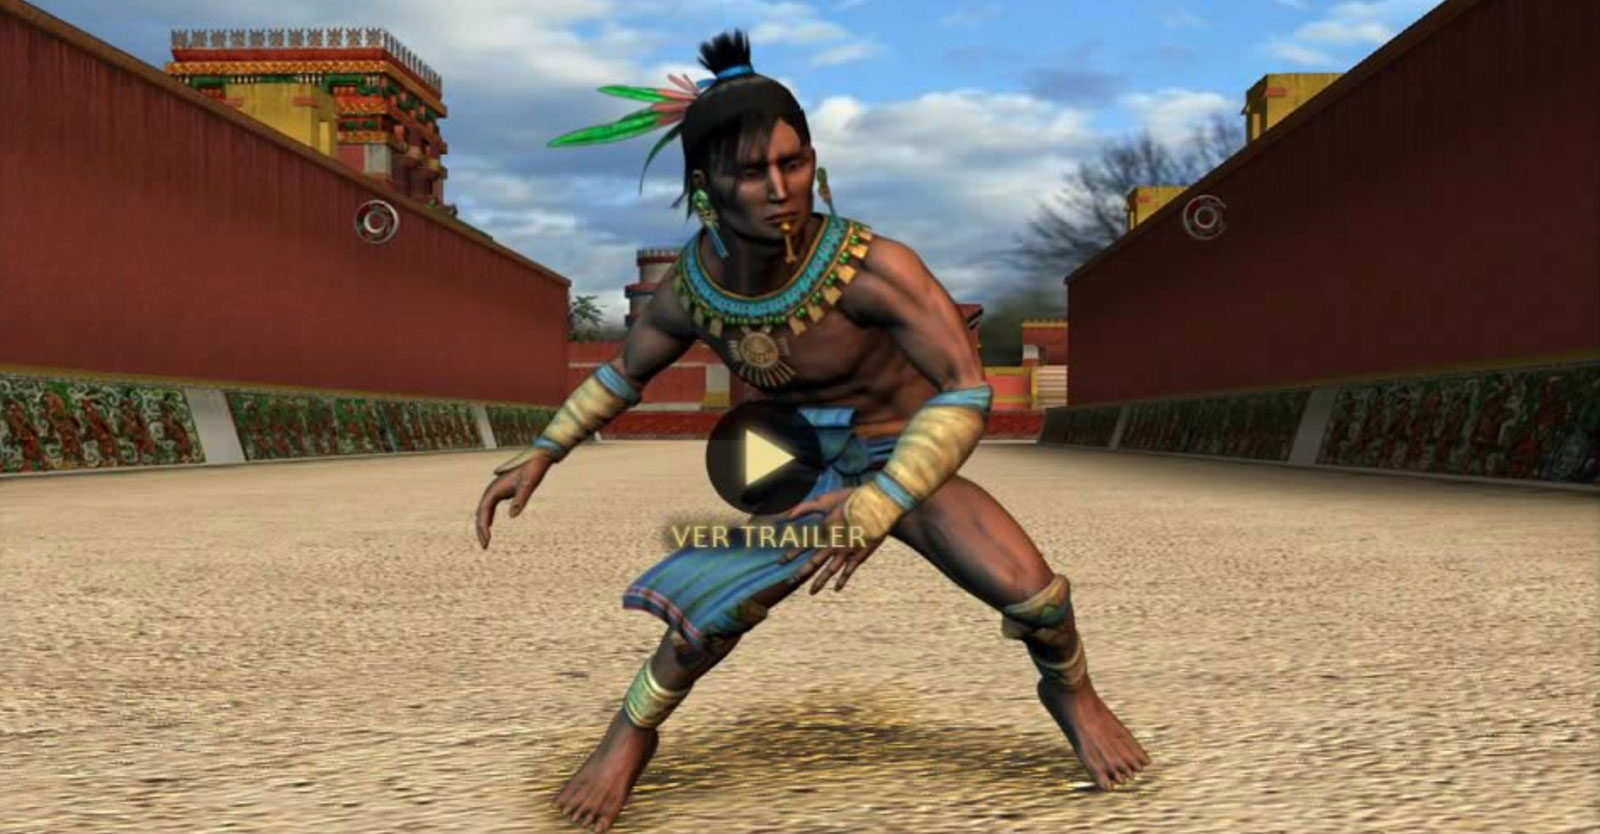 imagen de jugador de pelota maya o prehispanico